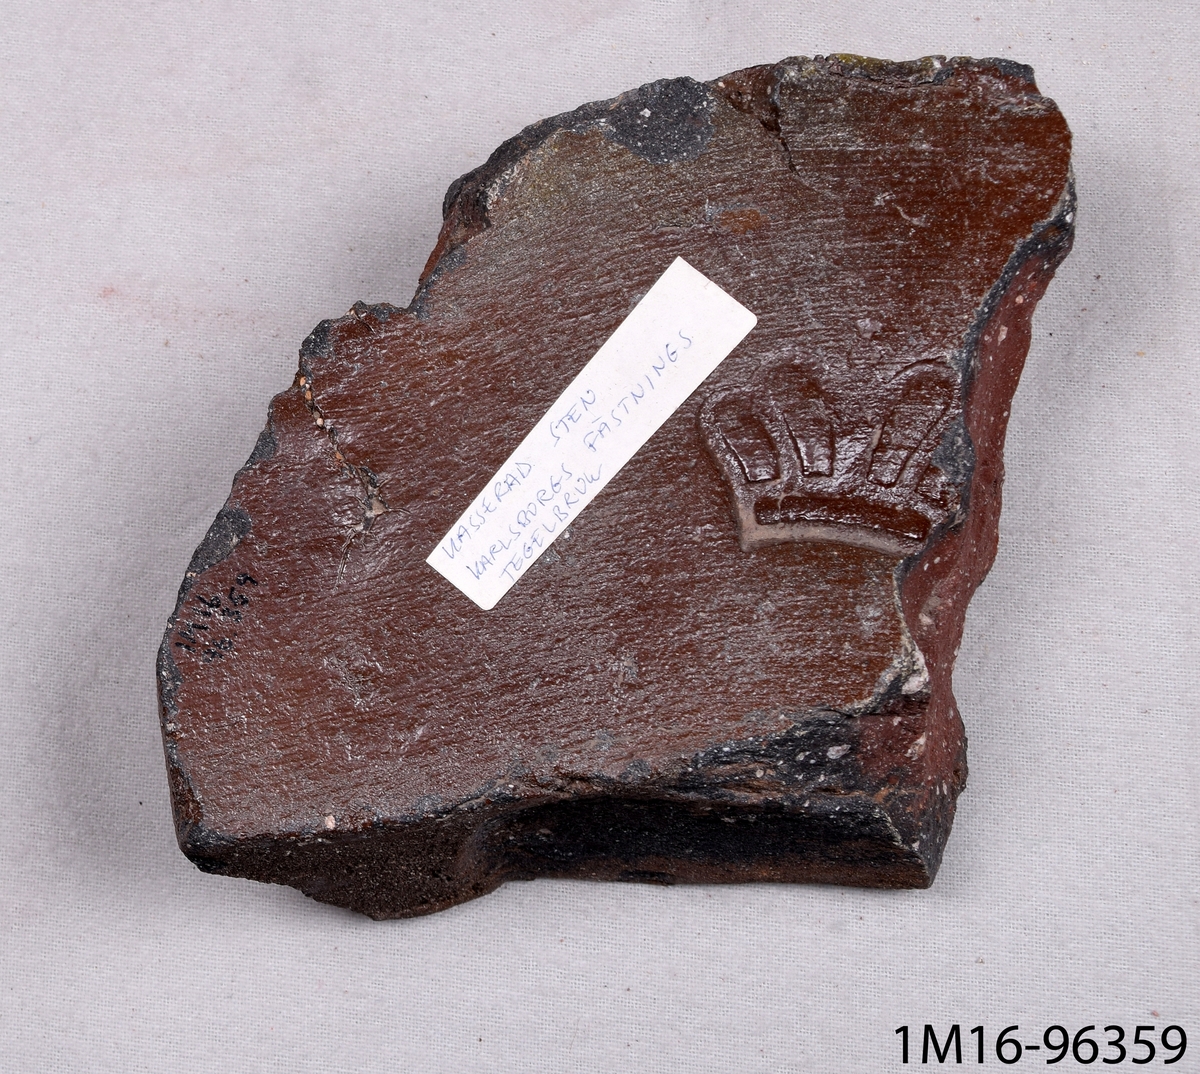 Fragment av murtegel, av bränd lera med brun glasyr. Har ett kronliknande ornament. Från Karlsborgs fästnings tegelbruk.